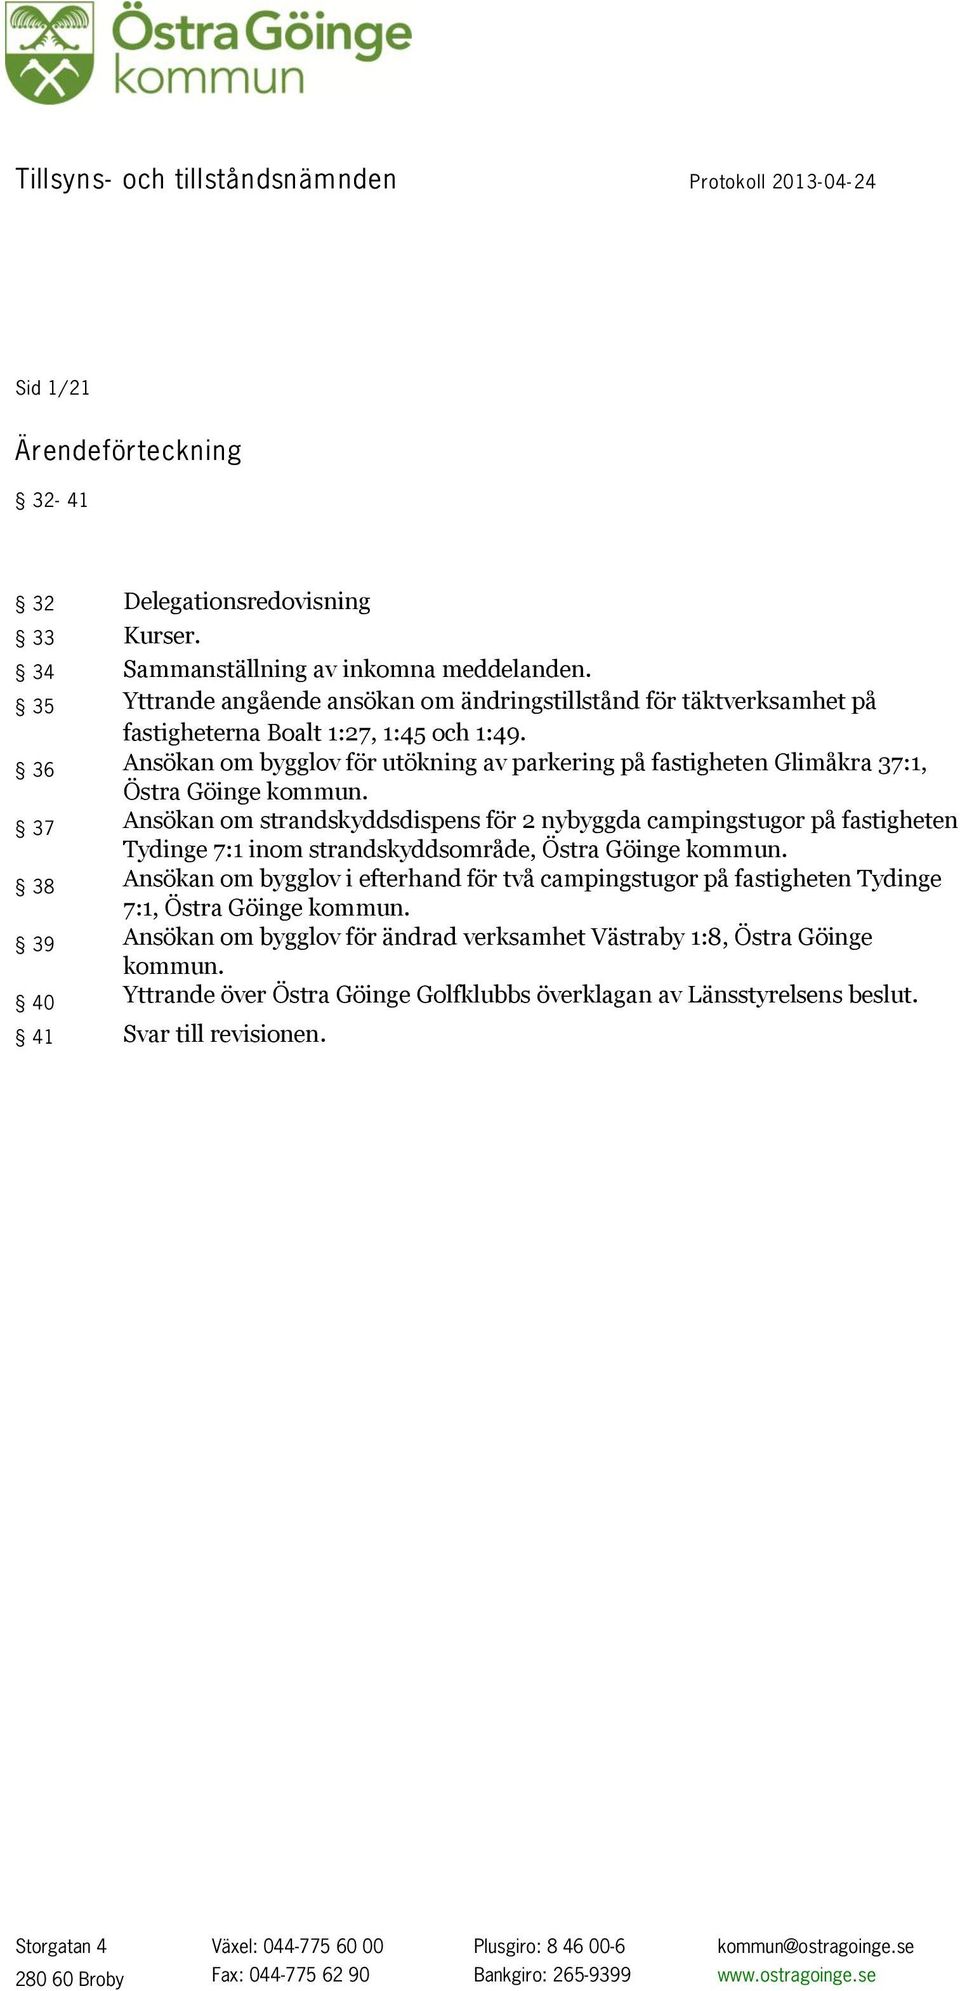 36 Ansökan om bygglov för utökning av parkering på fastigheten Glimåkra 37:1, Östra Göinge kommun.